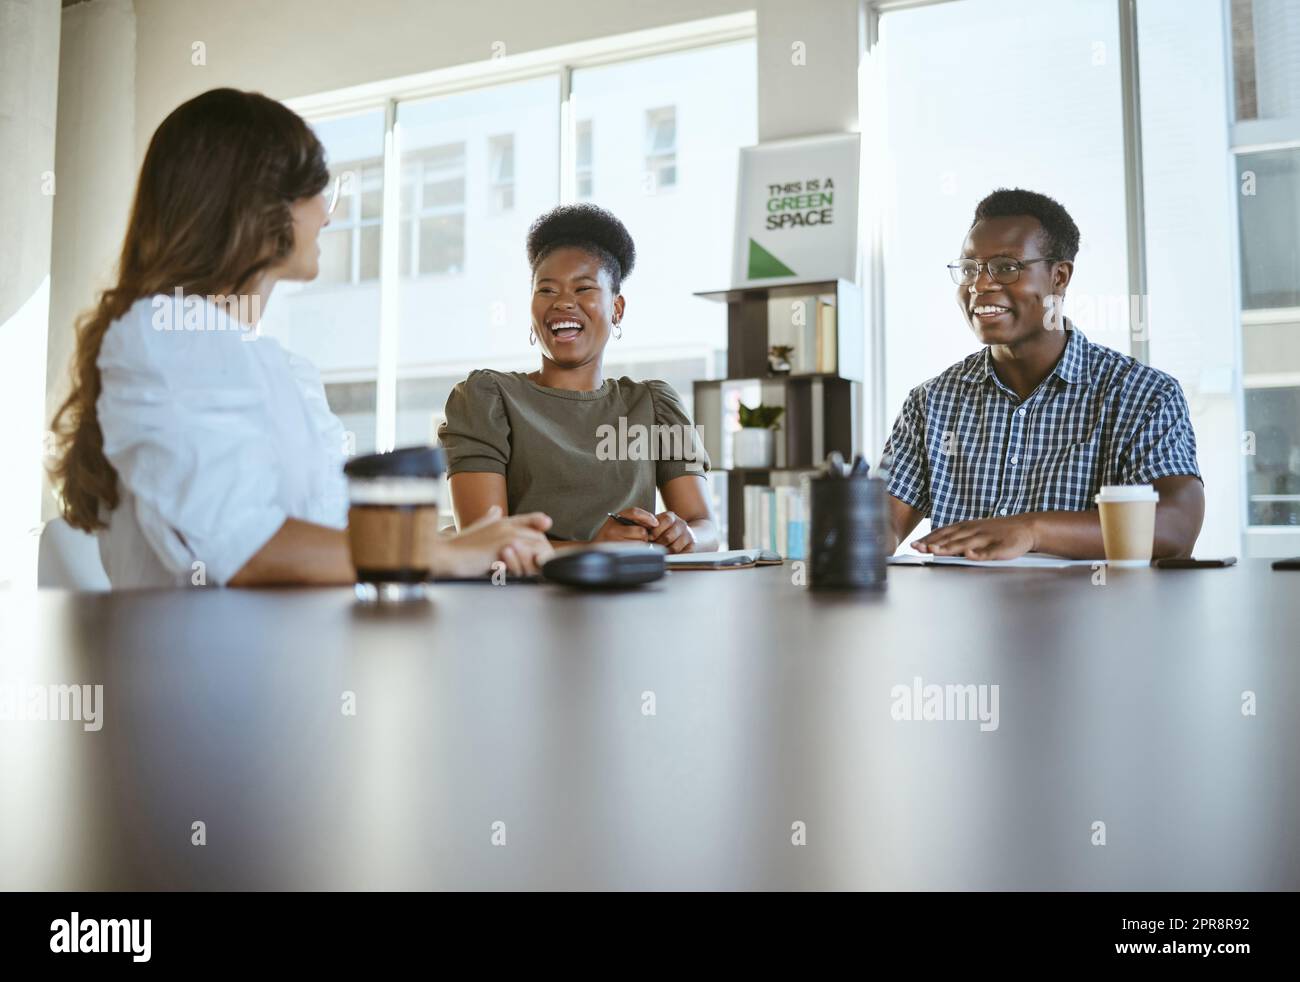 Drei junge, glückliche Geschäftsleute, die ein Meeting haben, während sie an einem Tisch bei der Arbeit sitzen. Fröhliche Geschäftsleute, die gemeinsam in einem Büro sprechen und planen Stockfoto